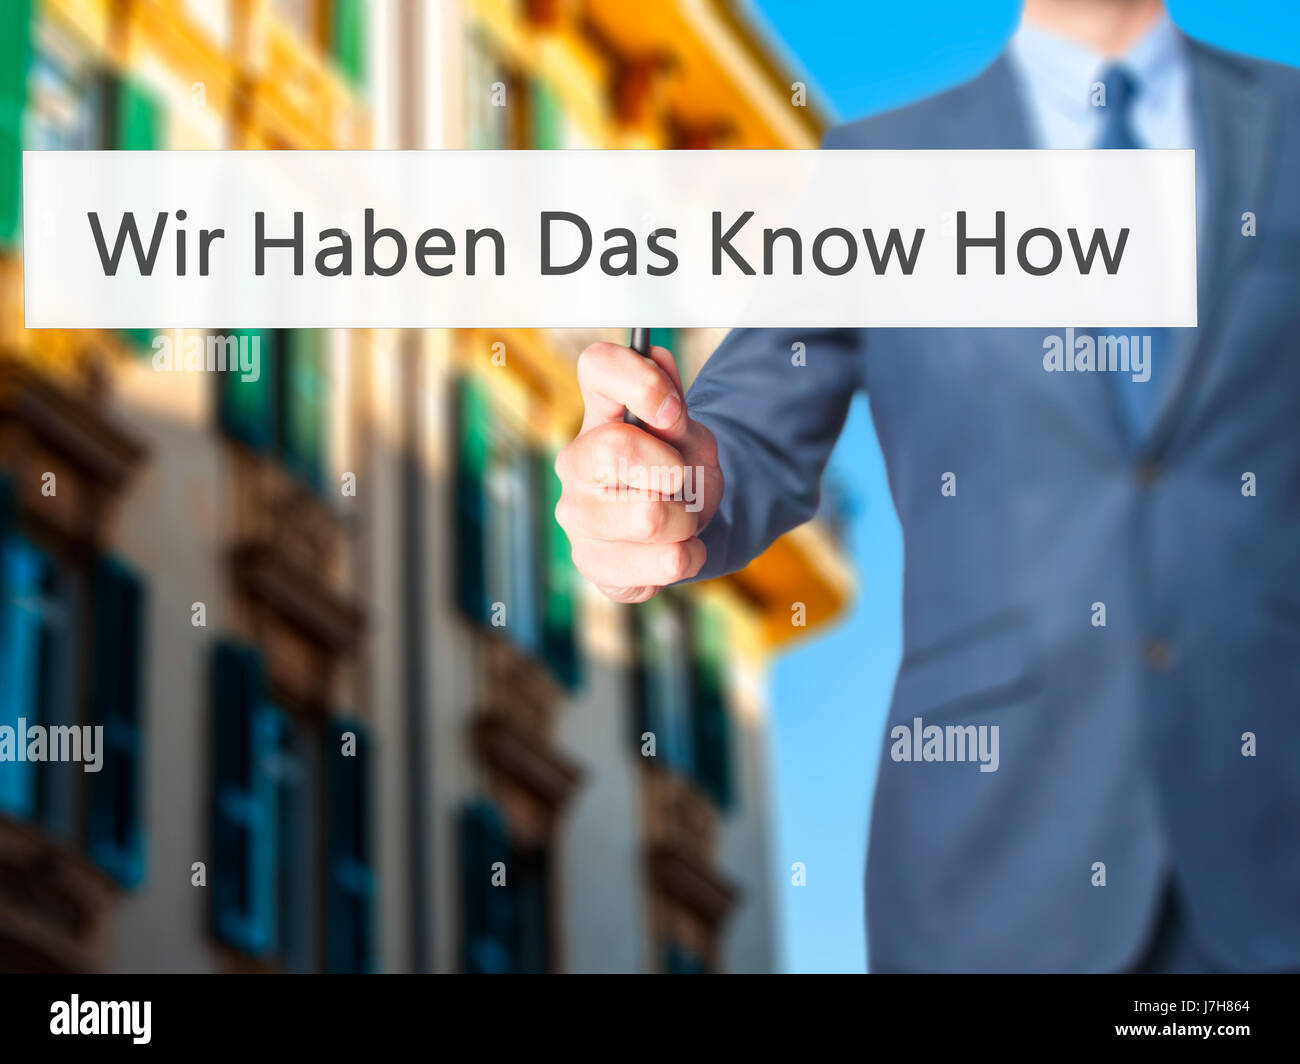 Wir haben Das Know How! (Abbiamo il know-how in tedesco) - Imprenditore mano azienda segno. Business, tecnologia internet concetto. Stock Photo Foto Stock